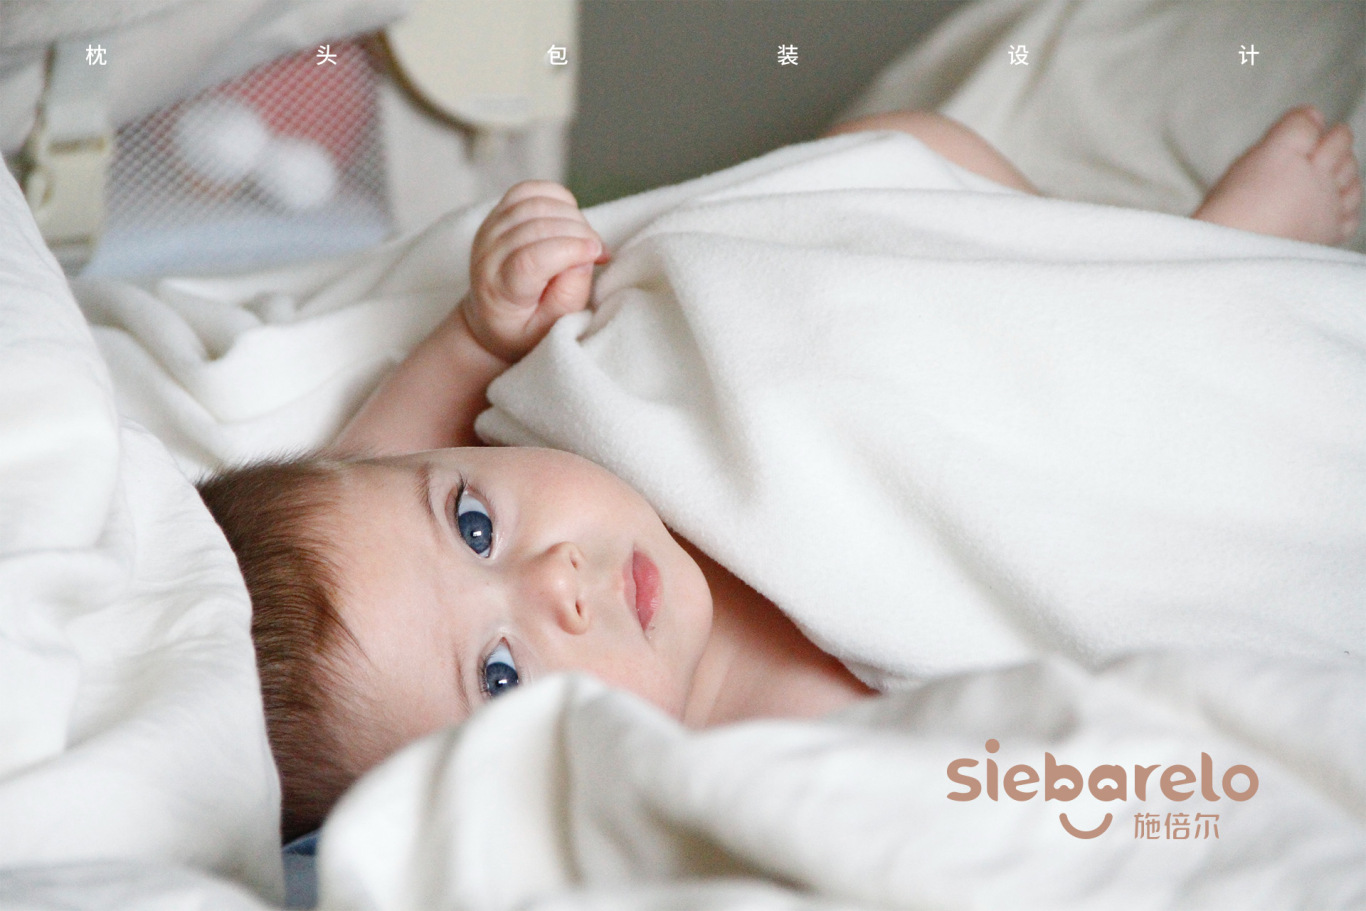 「Siebarelo」婴幼儿乳胶枕系列包装图0